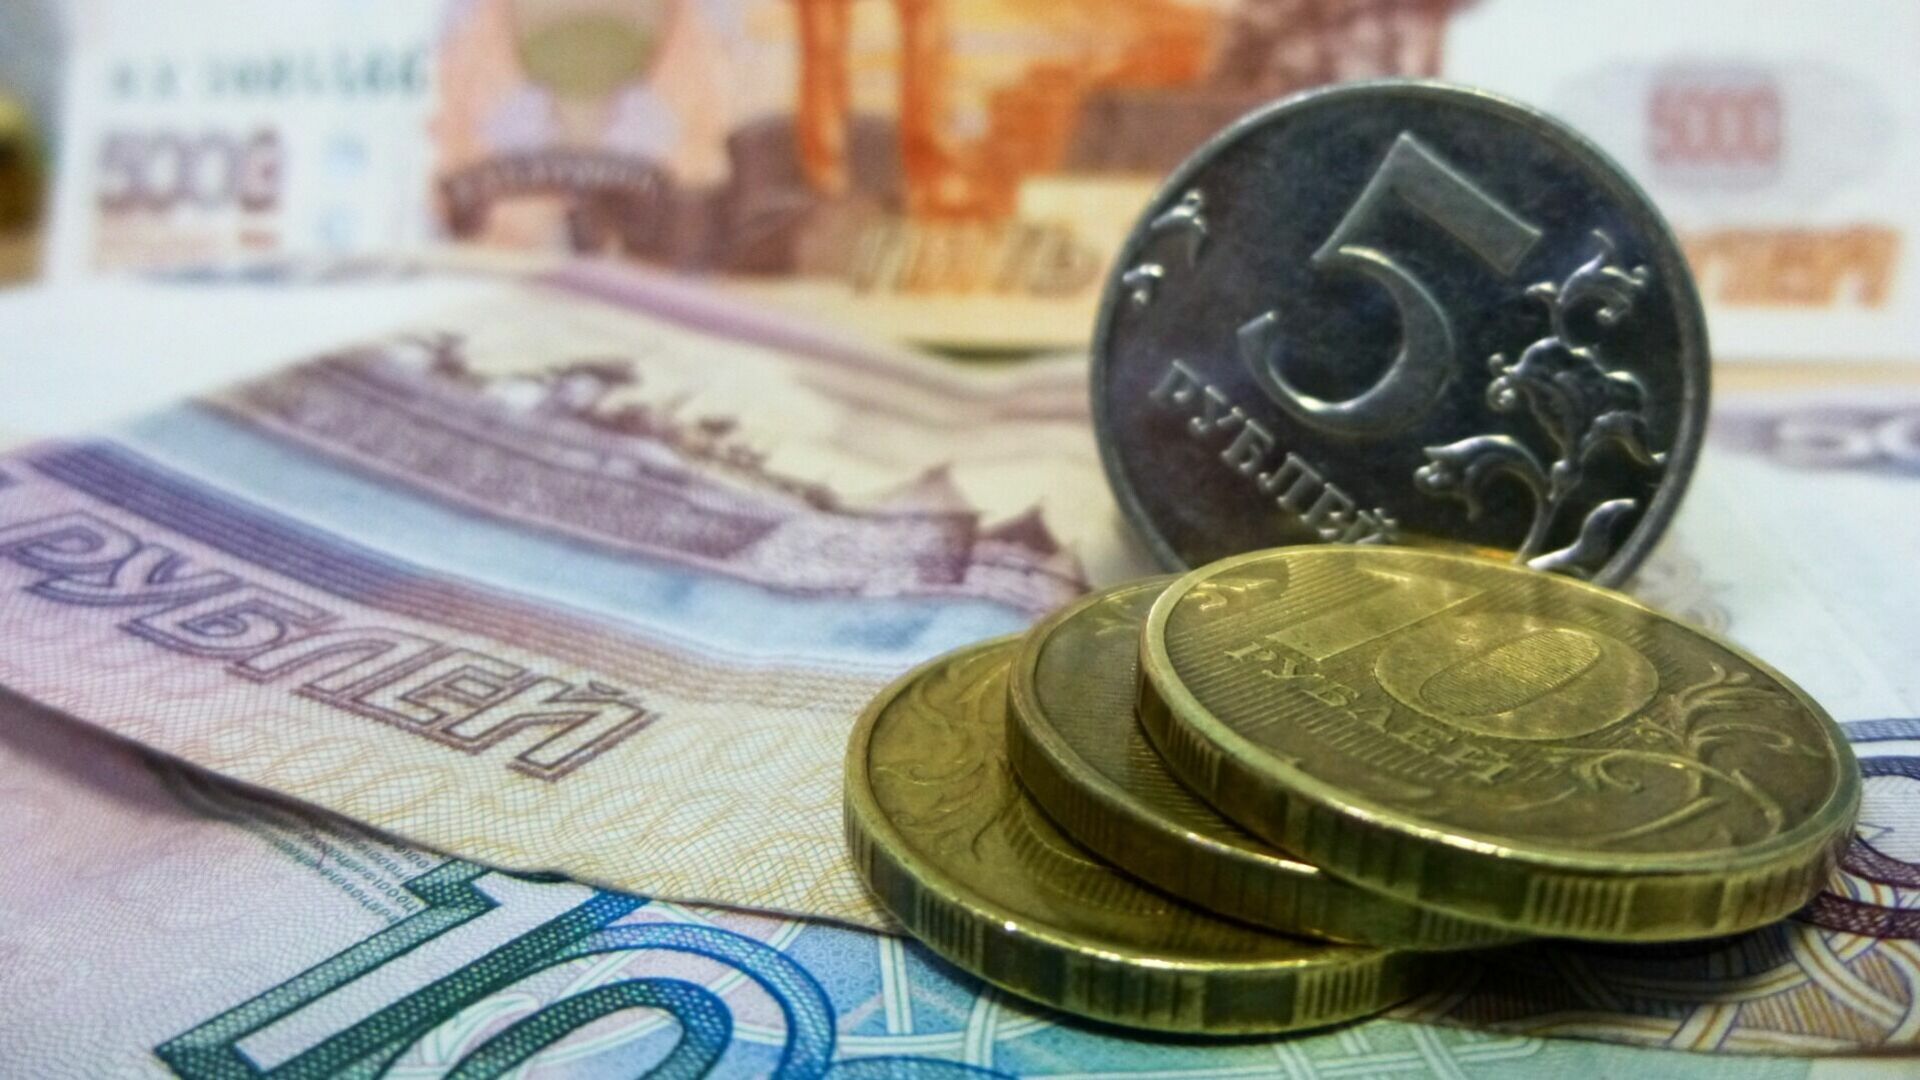 Поддельные купюры на 400 тысяч рублей и фальшивую монетку изъяли в Ростовской области